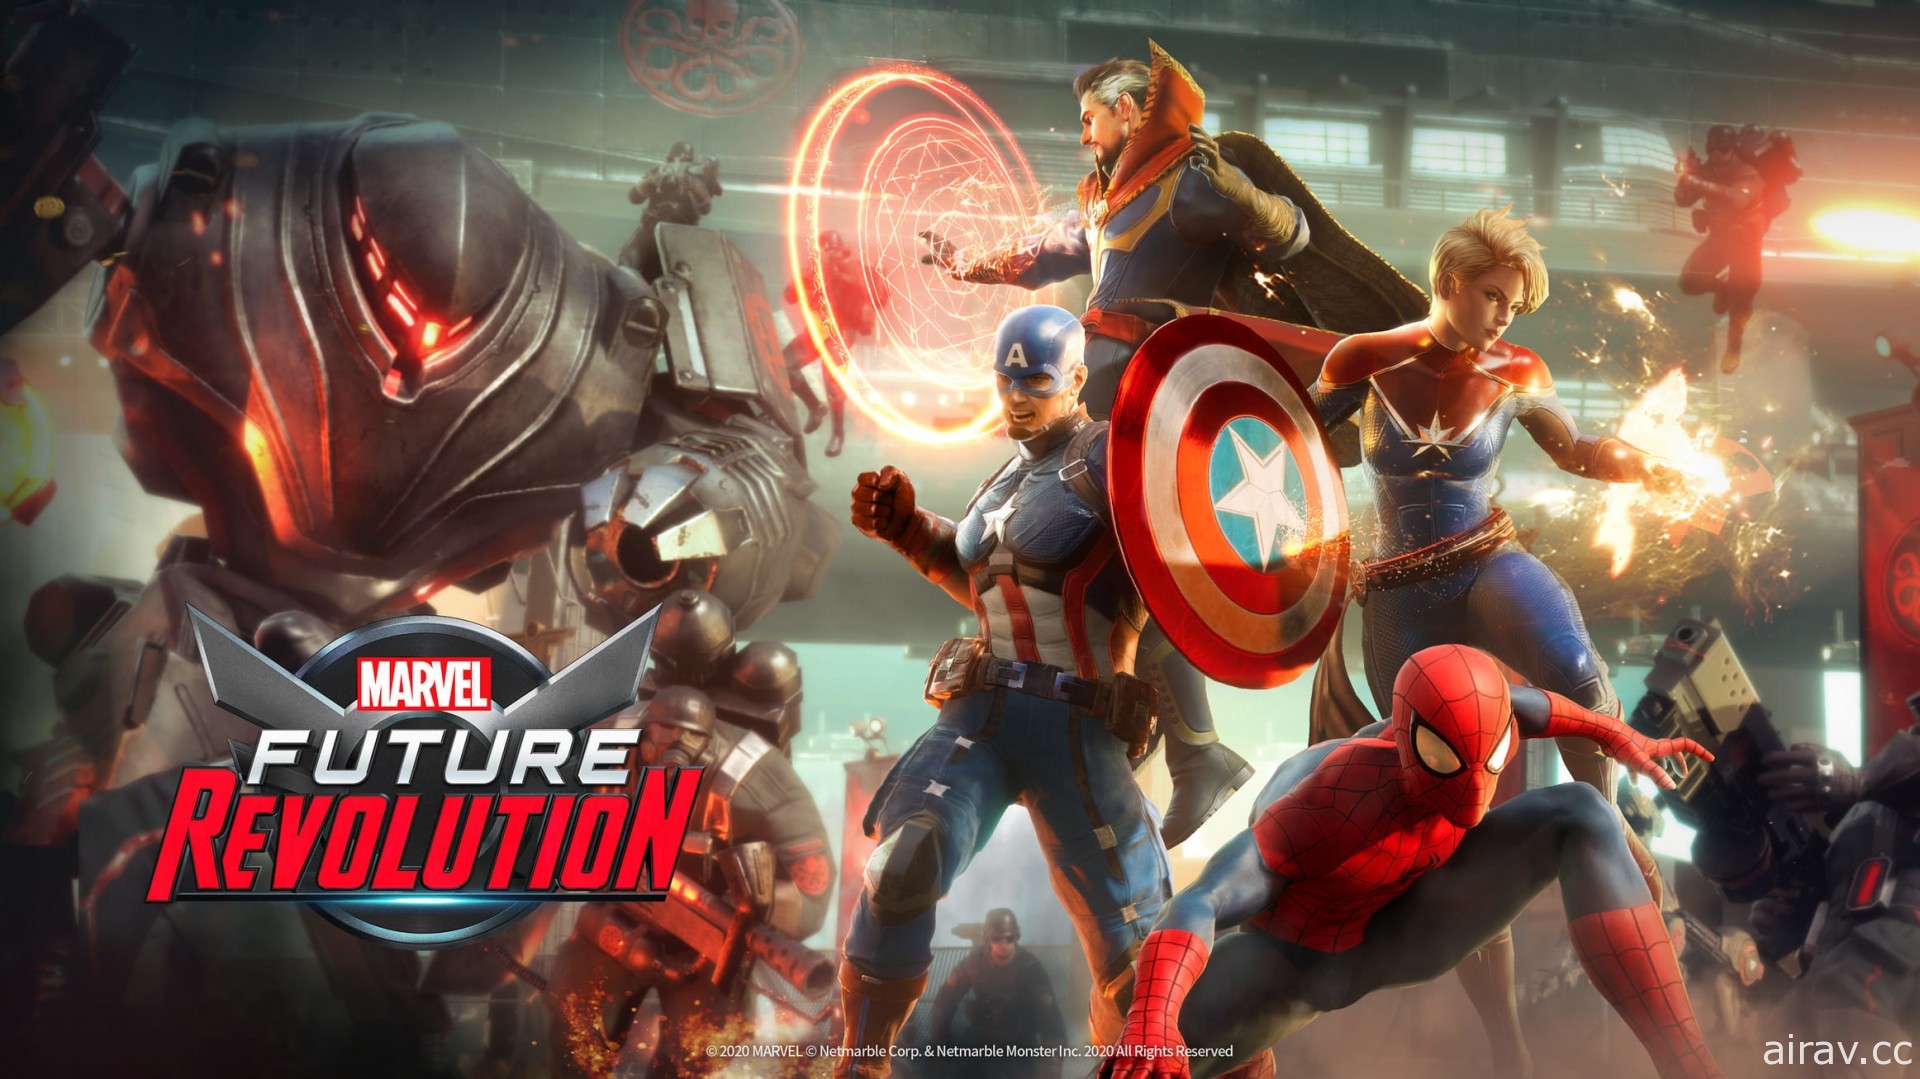 【試玩】《MARVEL 未來革命》攜手超級英雄體驗 Marvel 世界觀開放式世界